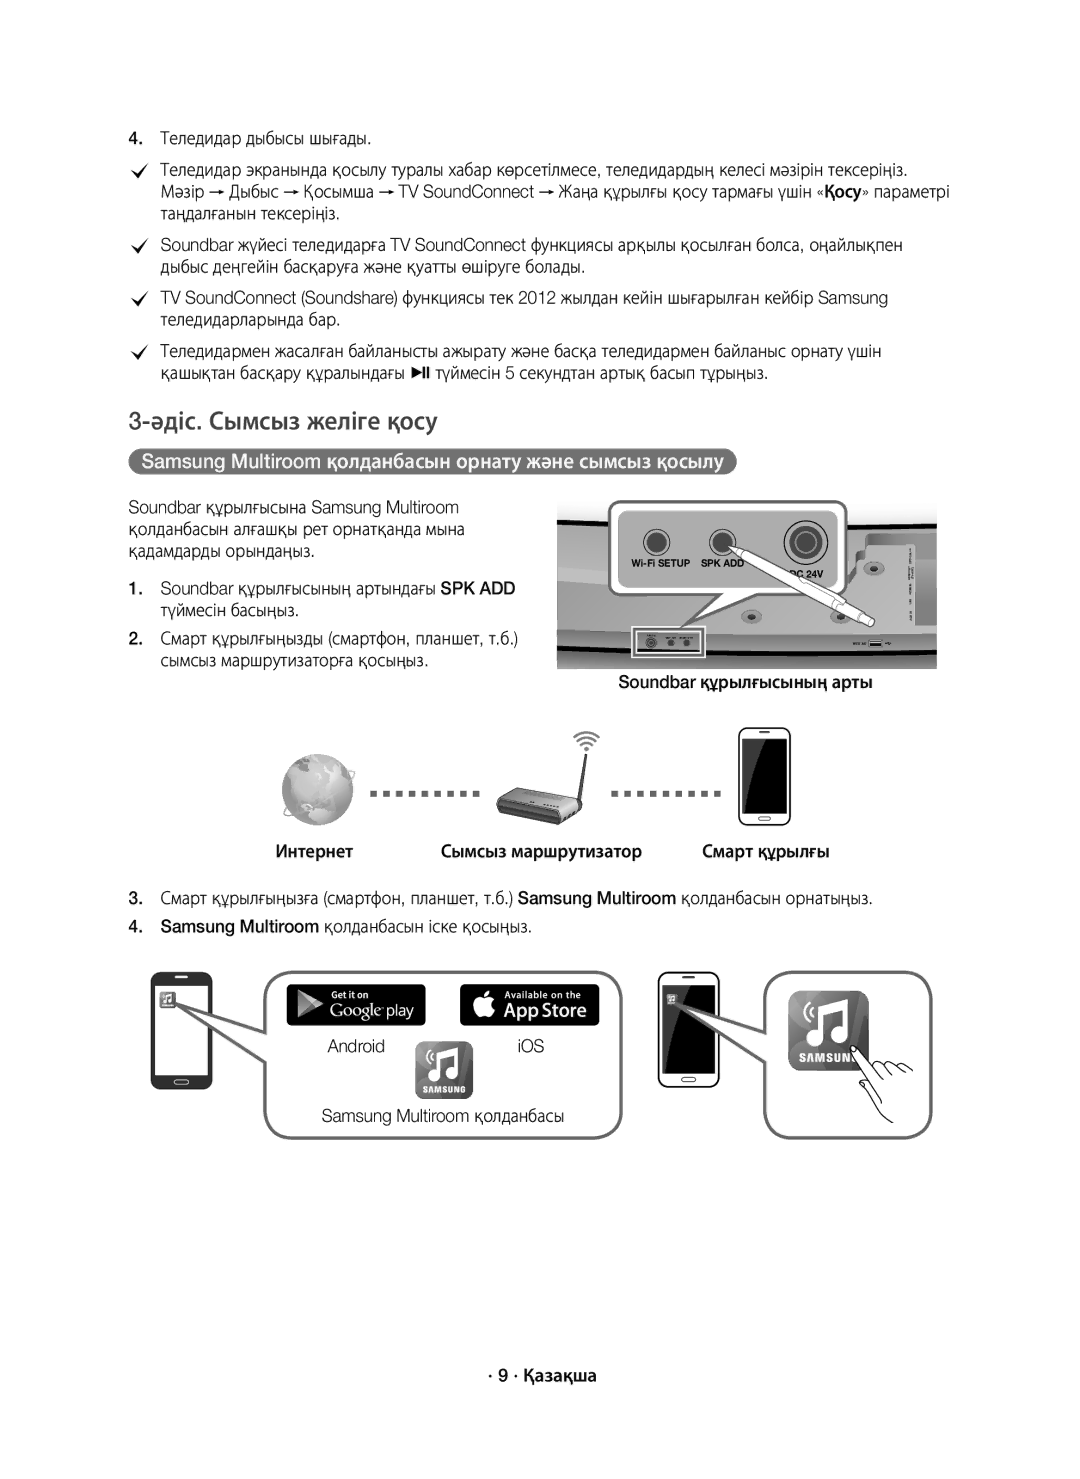 Samsung HW-J7500/RU manual Әдіс. Сымсыз желіге қосу, Soundbar құрылғысының артындағы SPK ADD түймесін басыңыз 